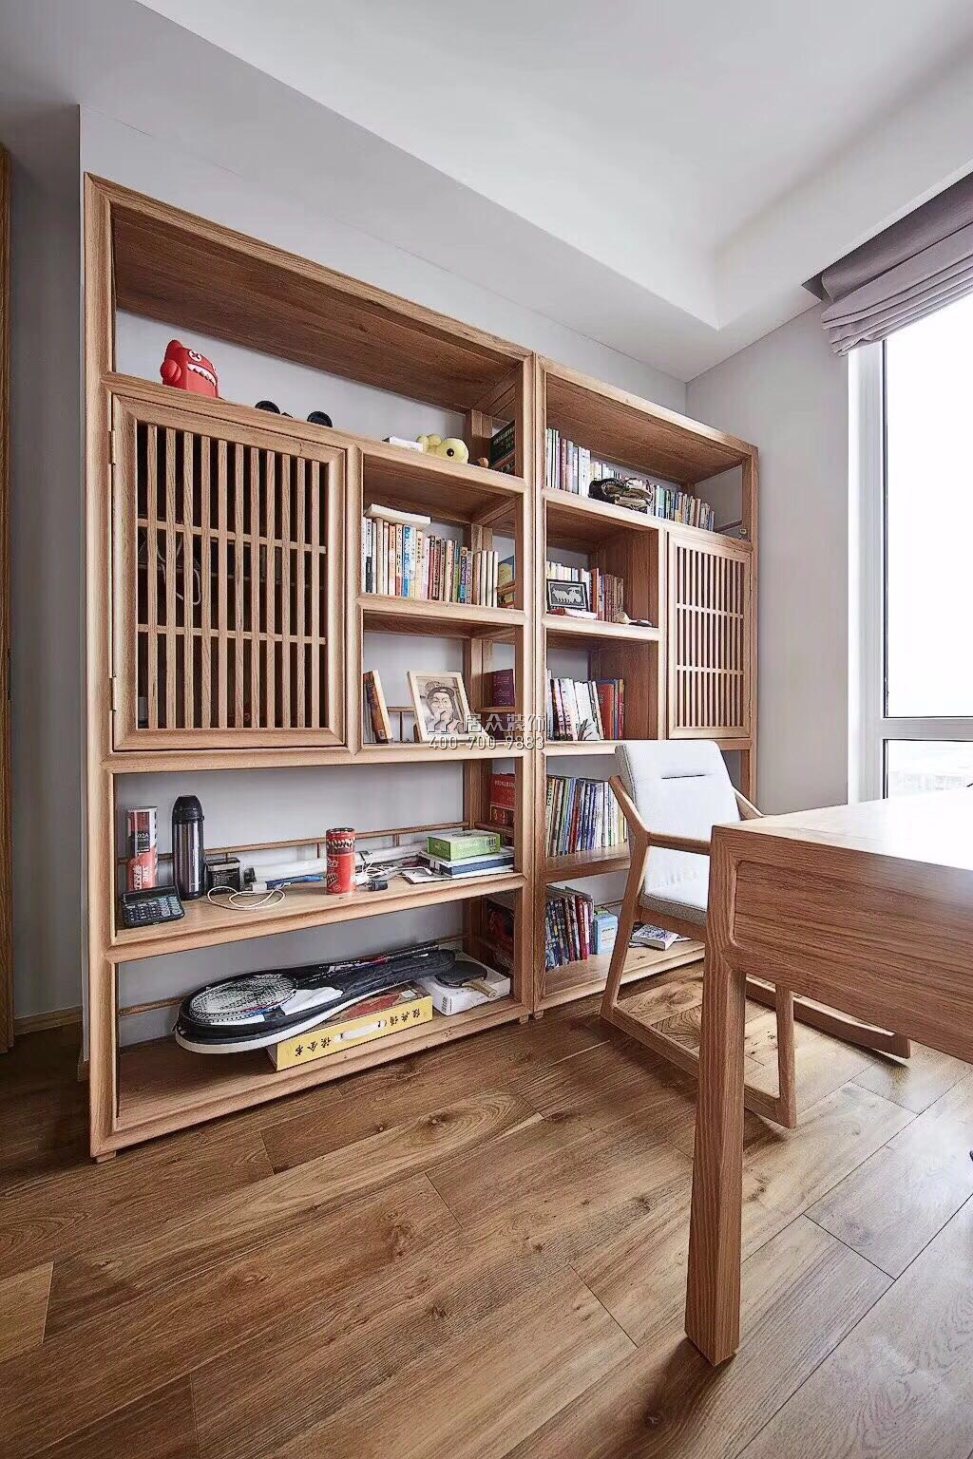 中洲中央公园二期120平方米现代简约风格平层户型书房装修效果图